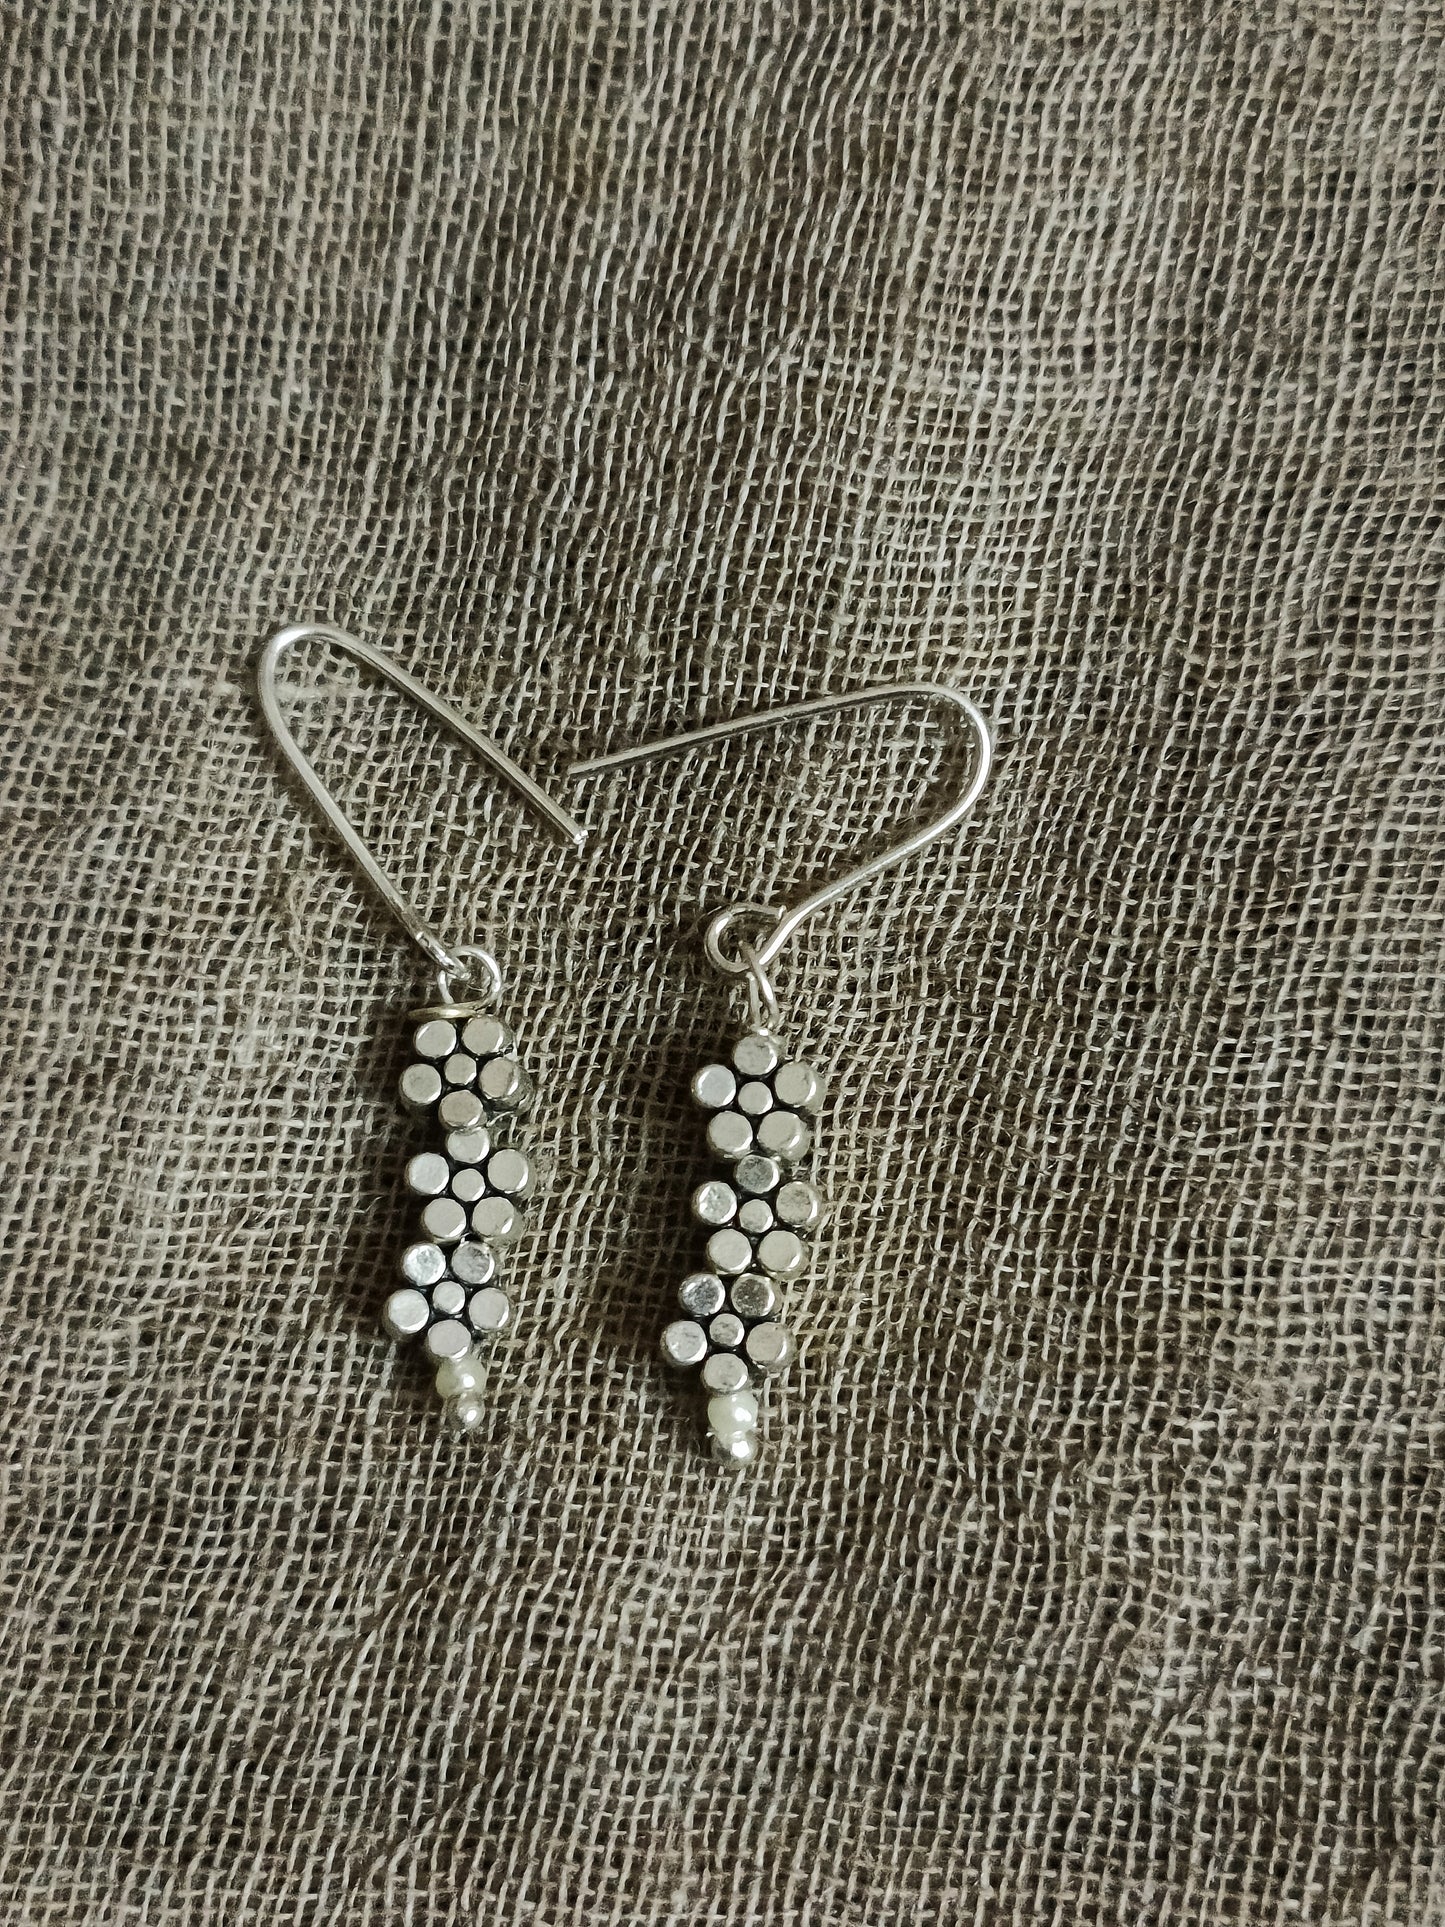 charm earrings